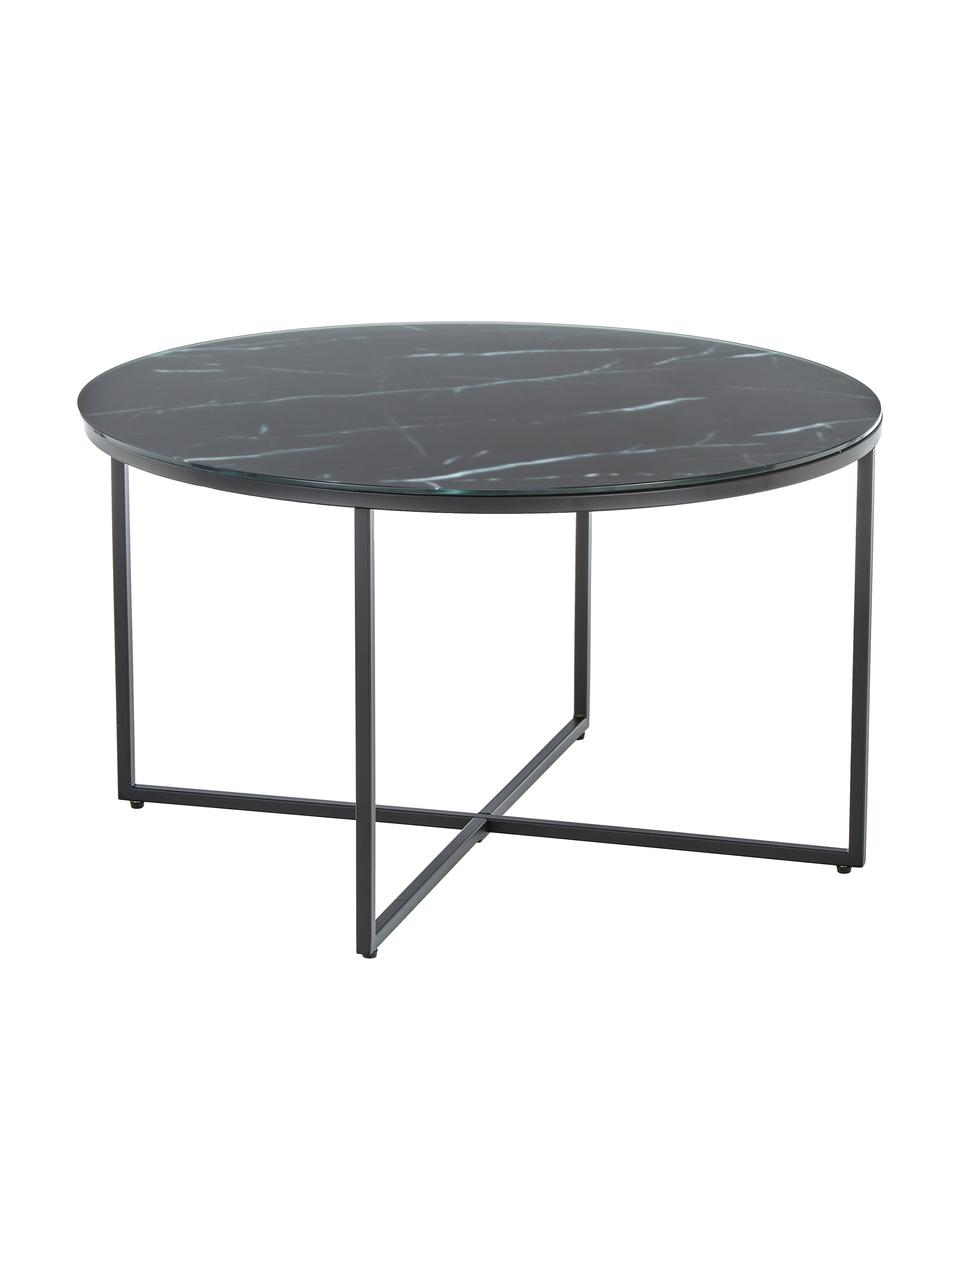 Kulatý konferenční stolek se skleněnou deskou v mramorovém vzhledu Antigua, Mramorový vzhled, černá, Ø 80 cm